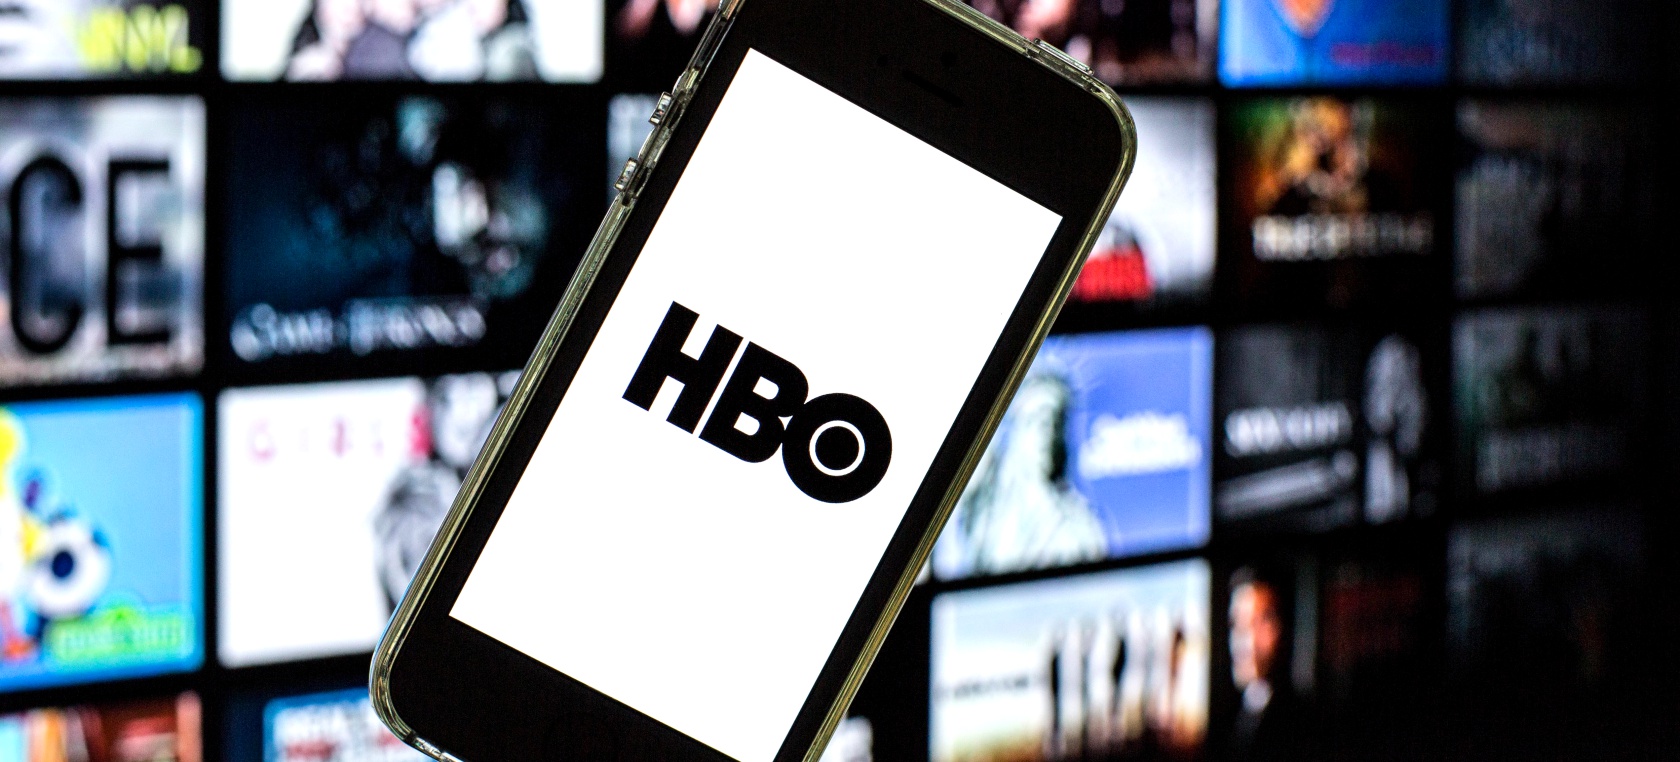 HBO España: precio, series, películas y todo lo que hay que saber antes de contratarlo